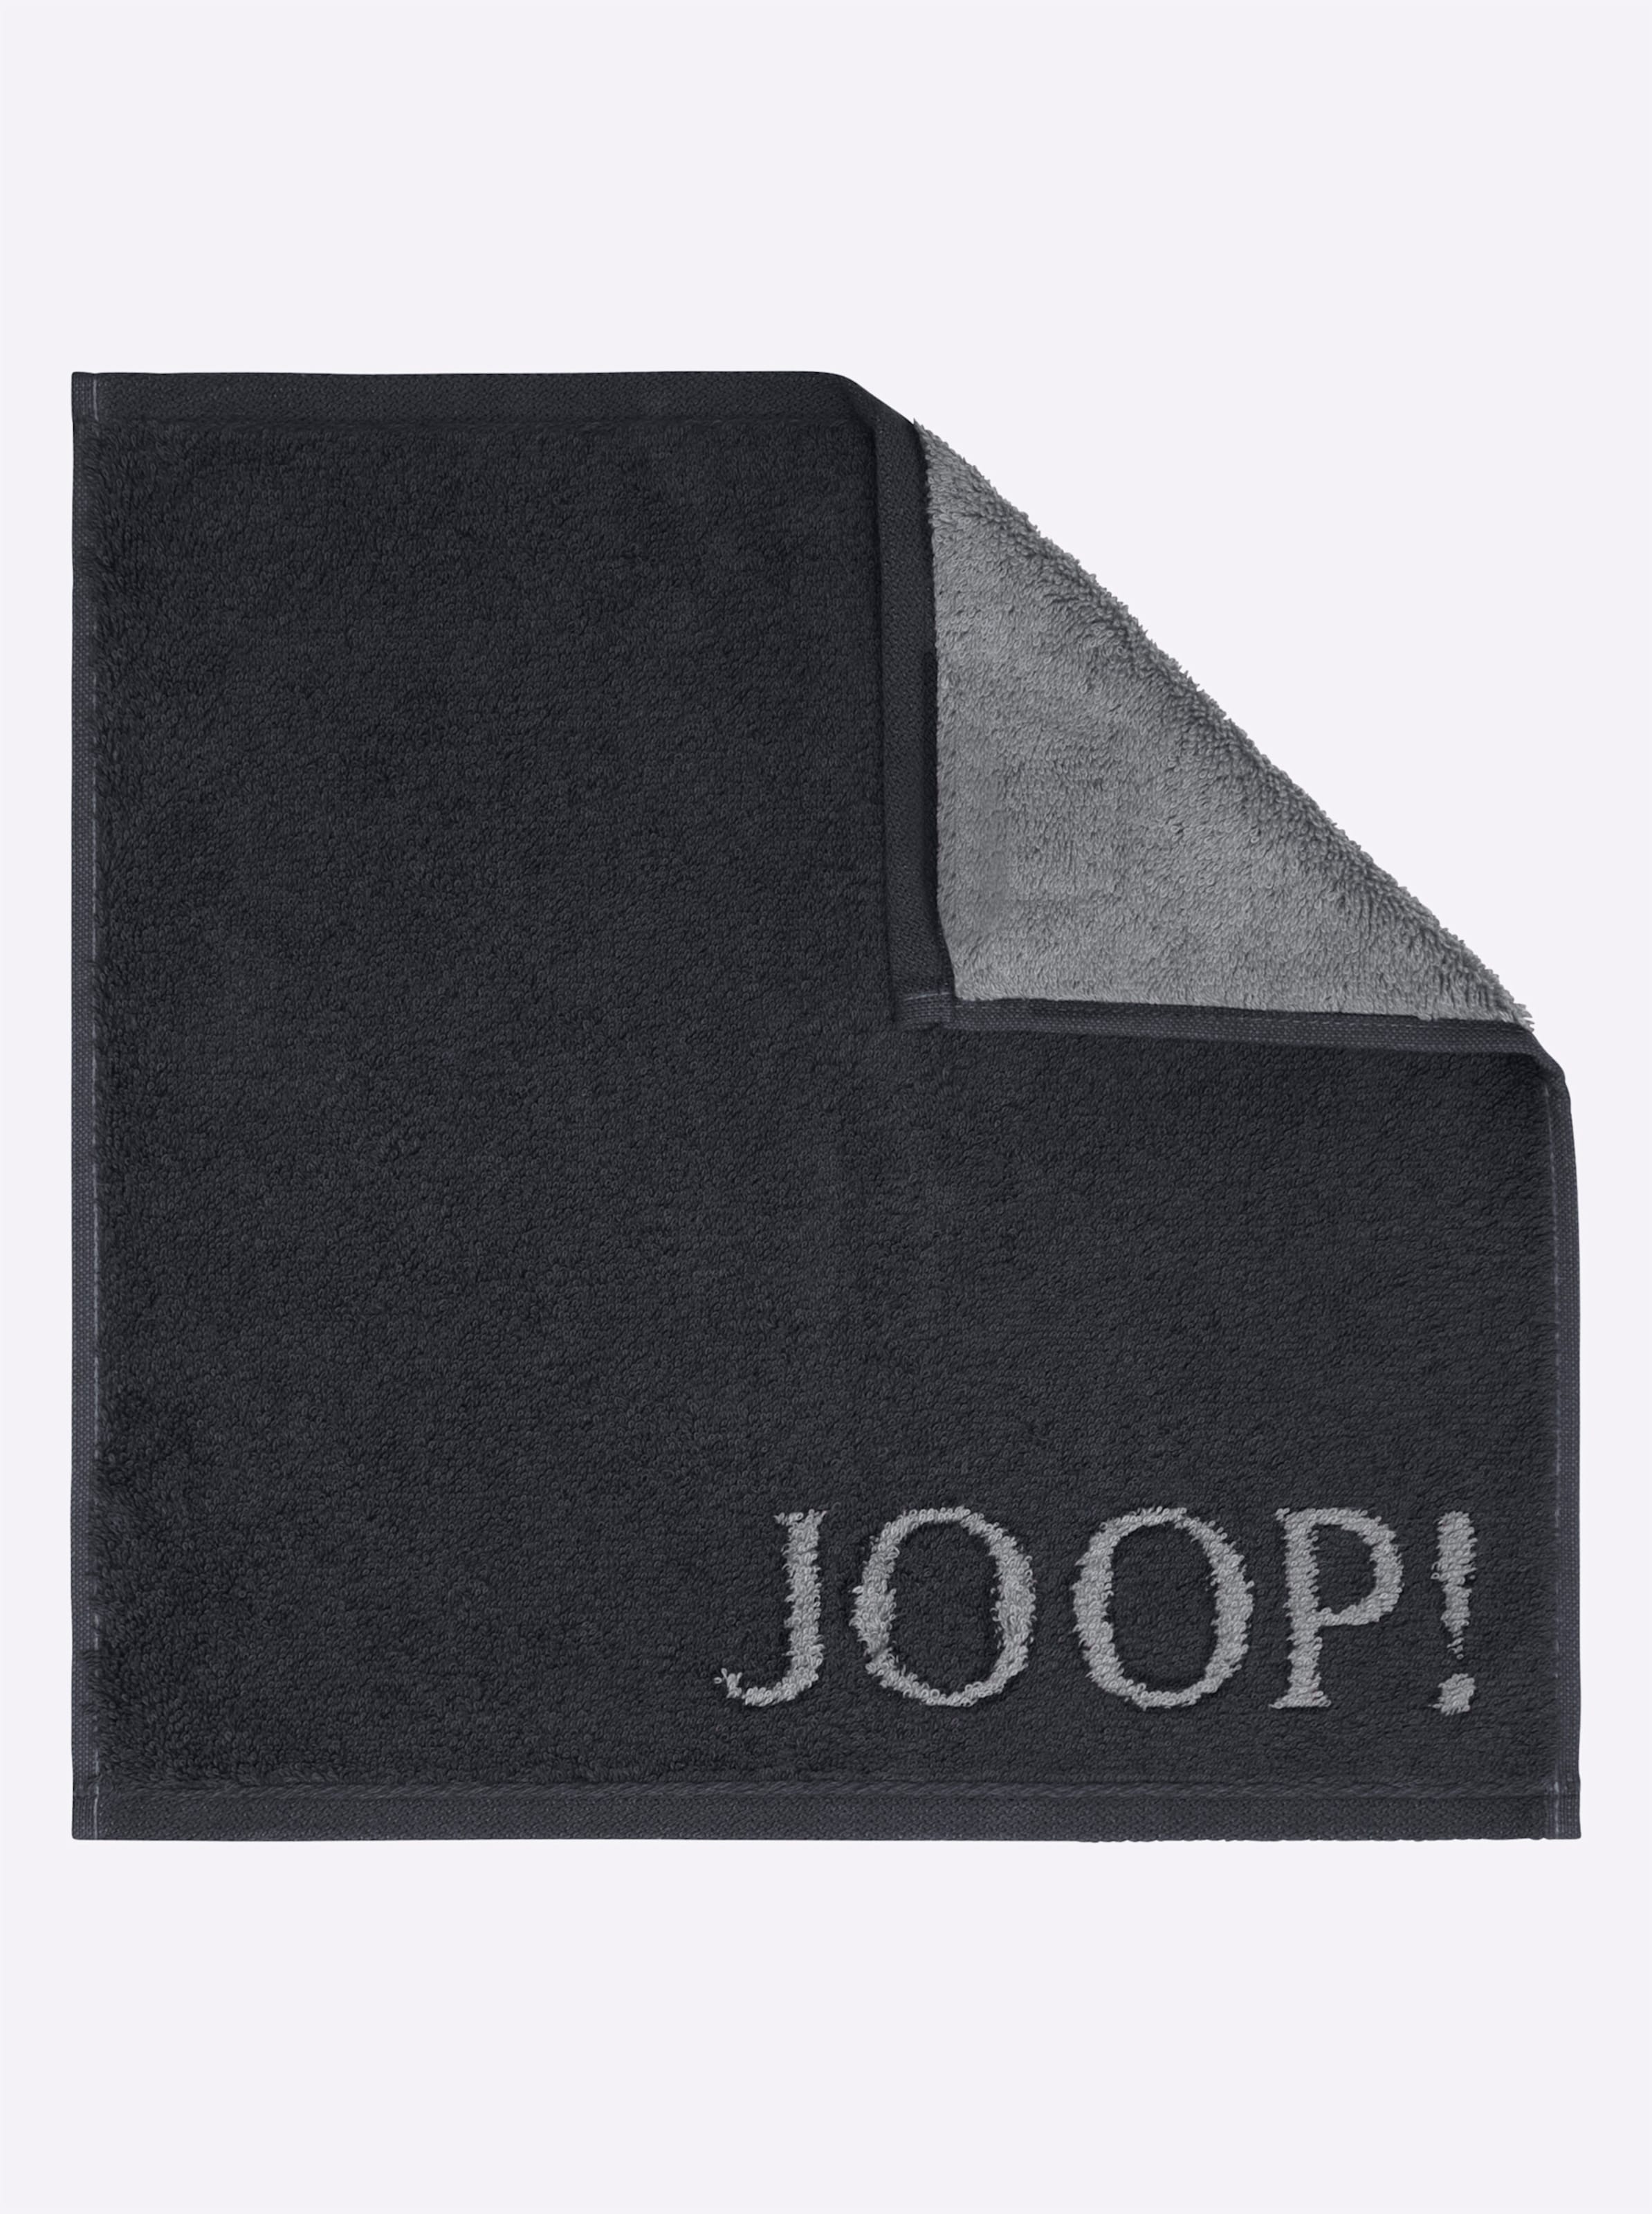 Weiche günstig Kaufen-Handtuch in schwarz von JOOP!. Handtuch in schwarz von JOOP! <![CDATA[Dieses elegante Handtuch-Programm aus dem Hause JOOP! macht Ihr Bad zur luxuriösen Wellness-Oase! Attraktives Hell-Dunkel-Dessin mit eingewebtem JOOP!-Logo. Extra weiche, super flausch